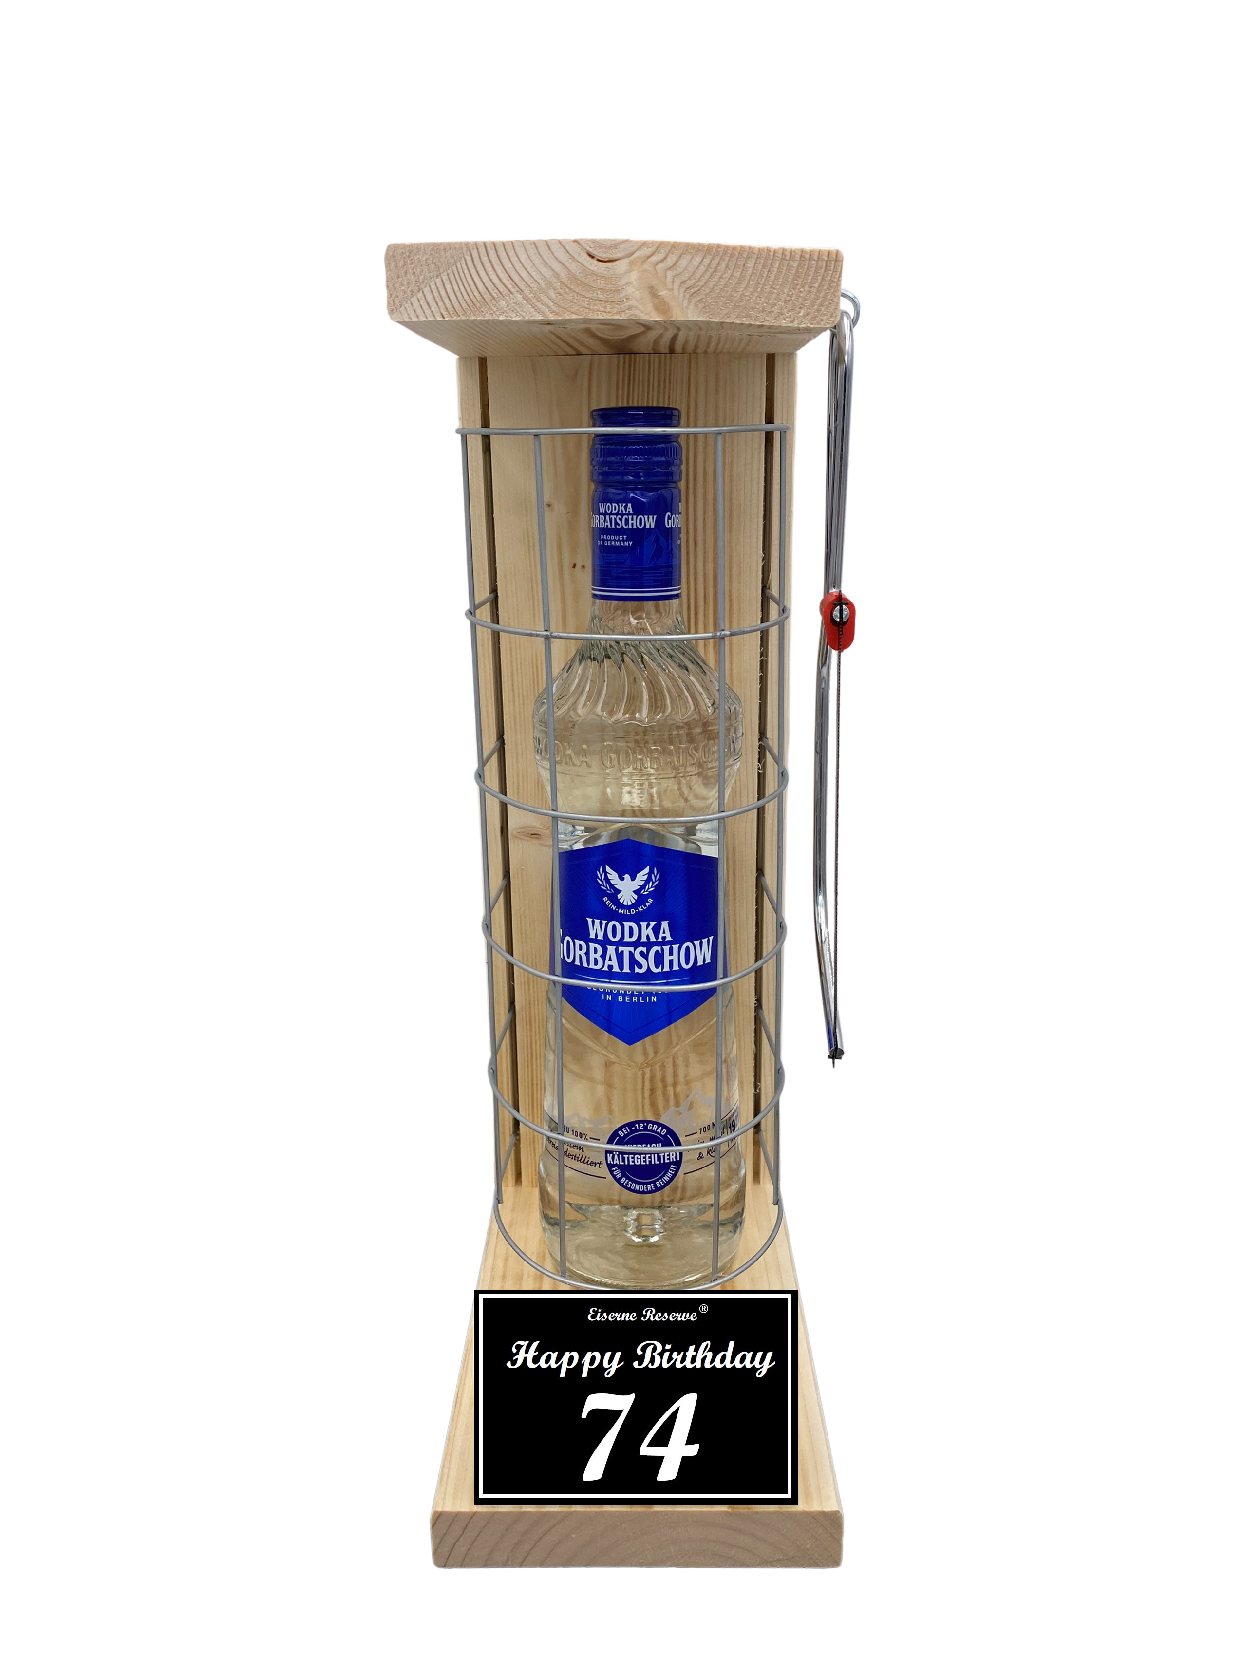 Wodka Geschenk zum 74 Geburtstag - Eiserne Reserve Gitterkäfig